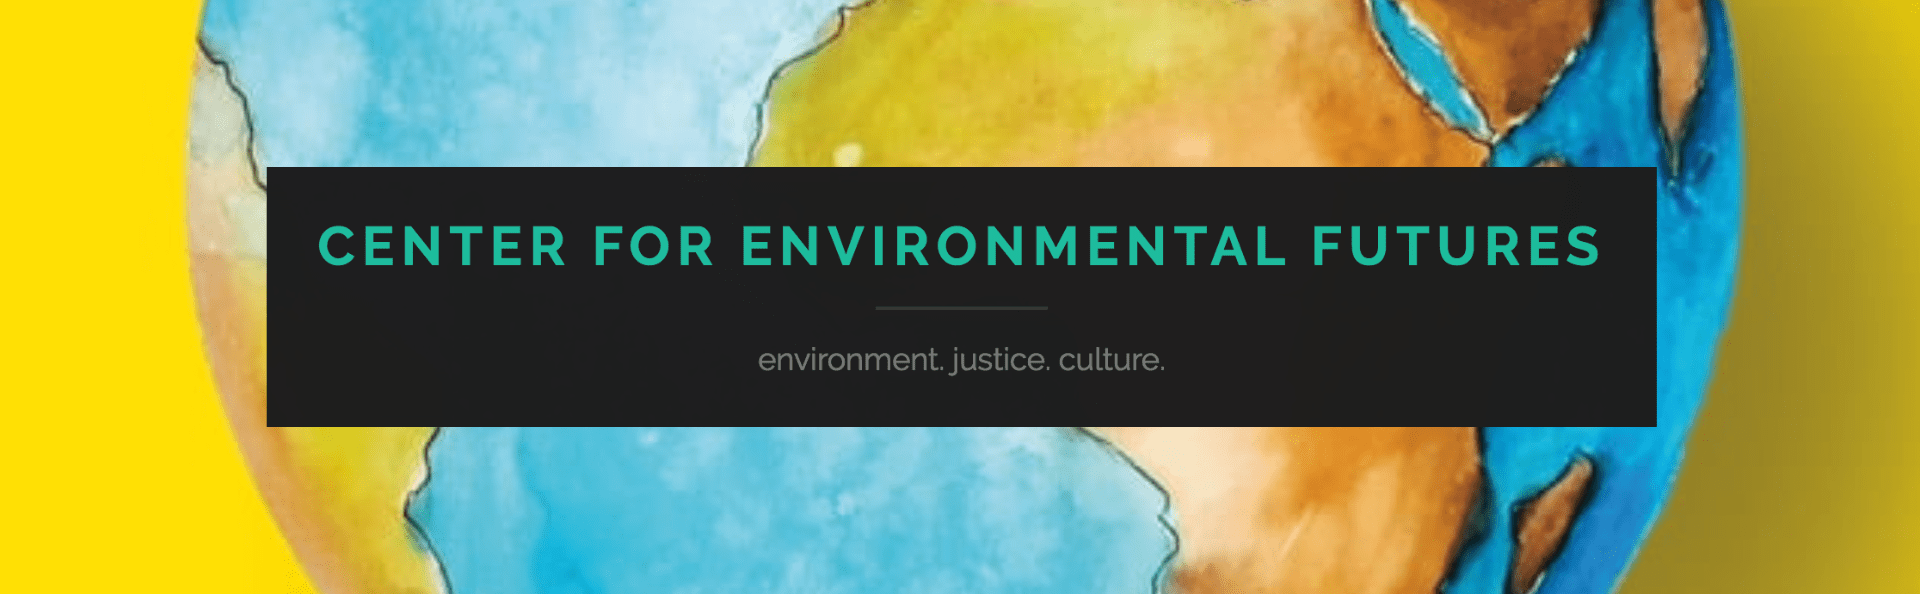 Center for Environmental Futures logo